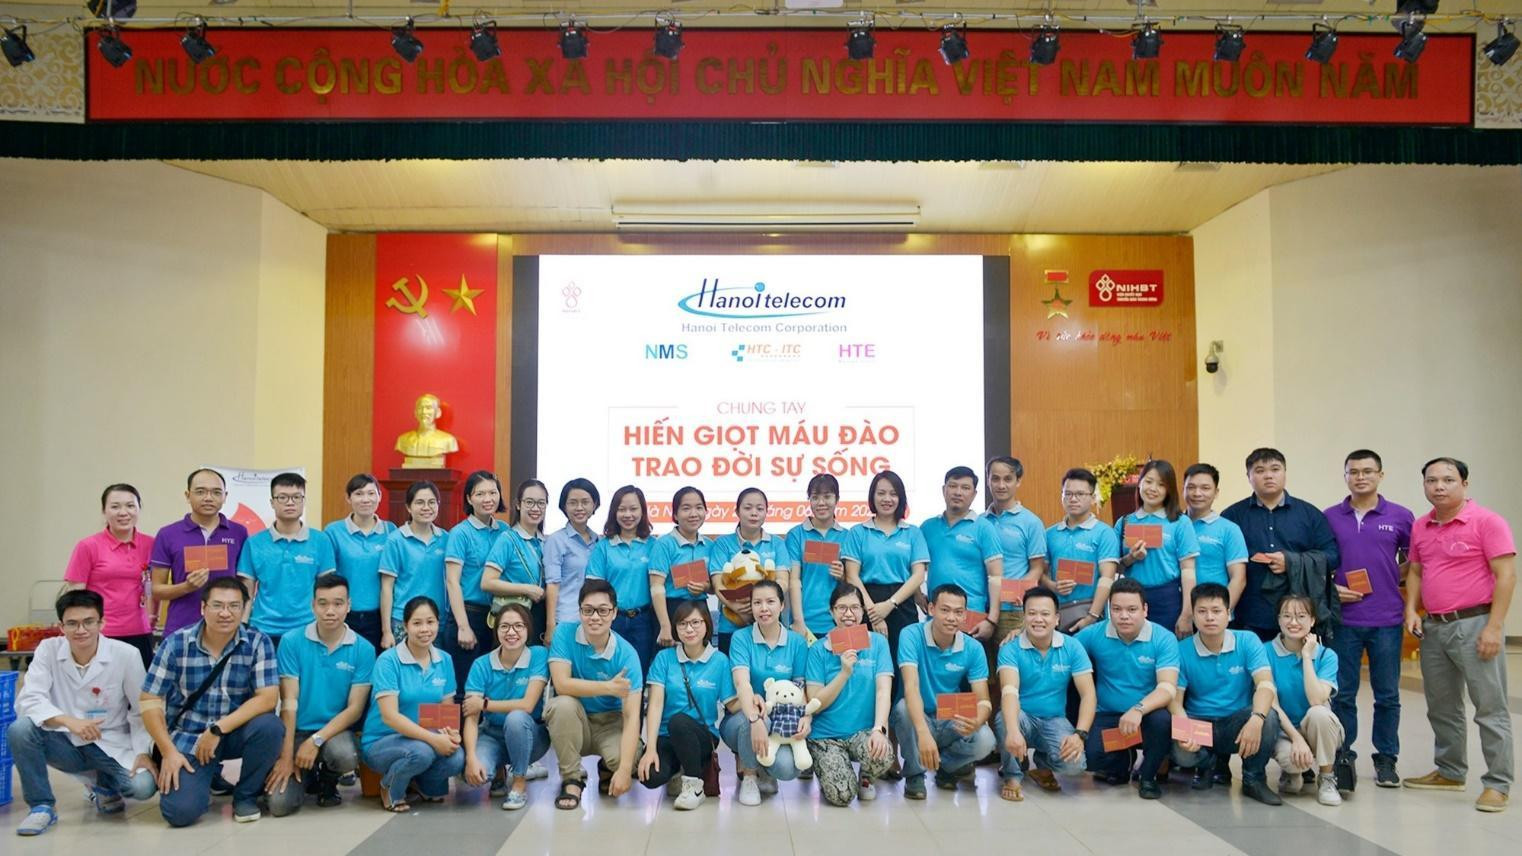 Hanoi Telecom khôi phục hậu đại dịch nhờ ưu tiên phát triển nguồn nhân lực - Ảnh 2.